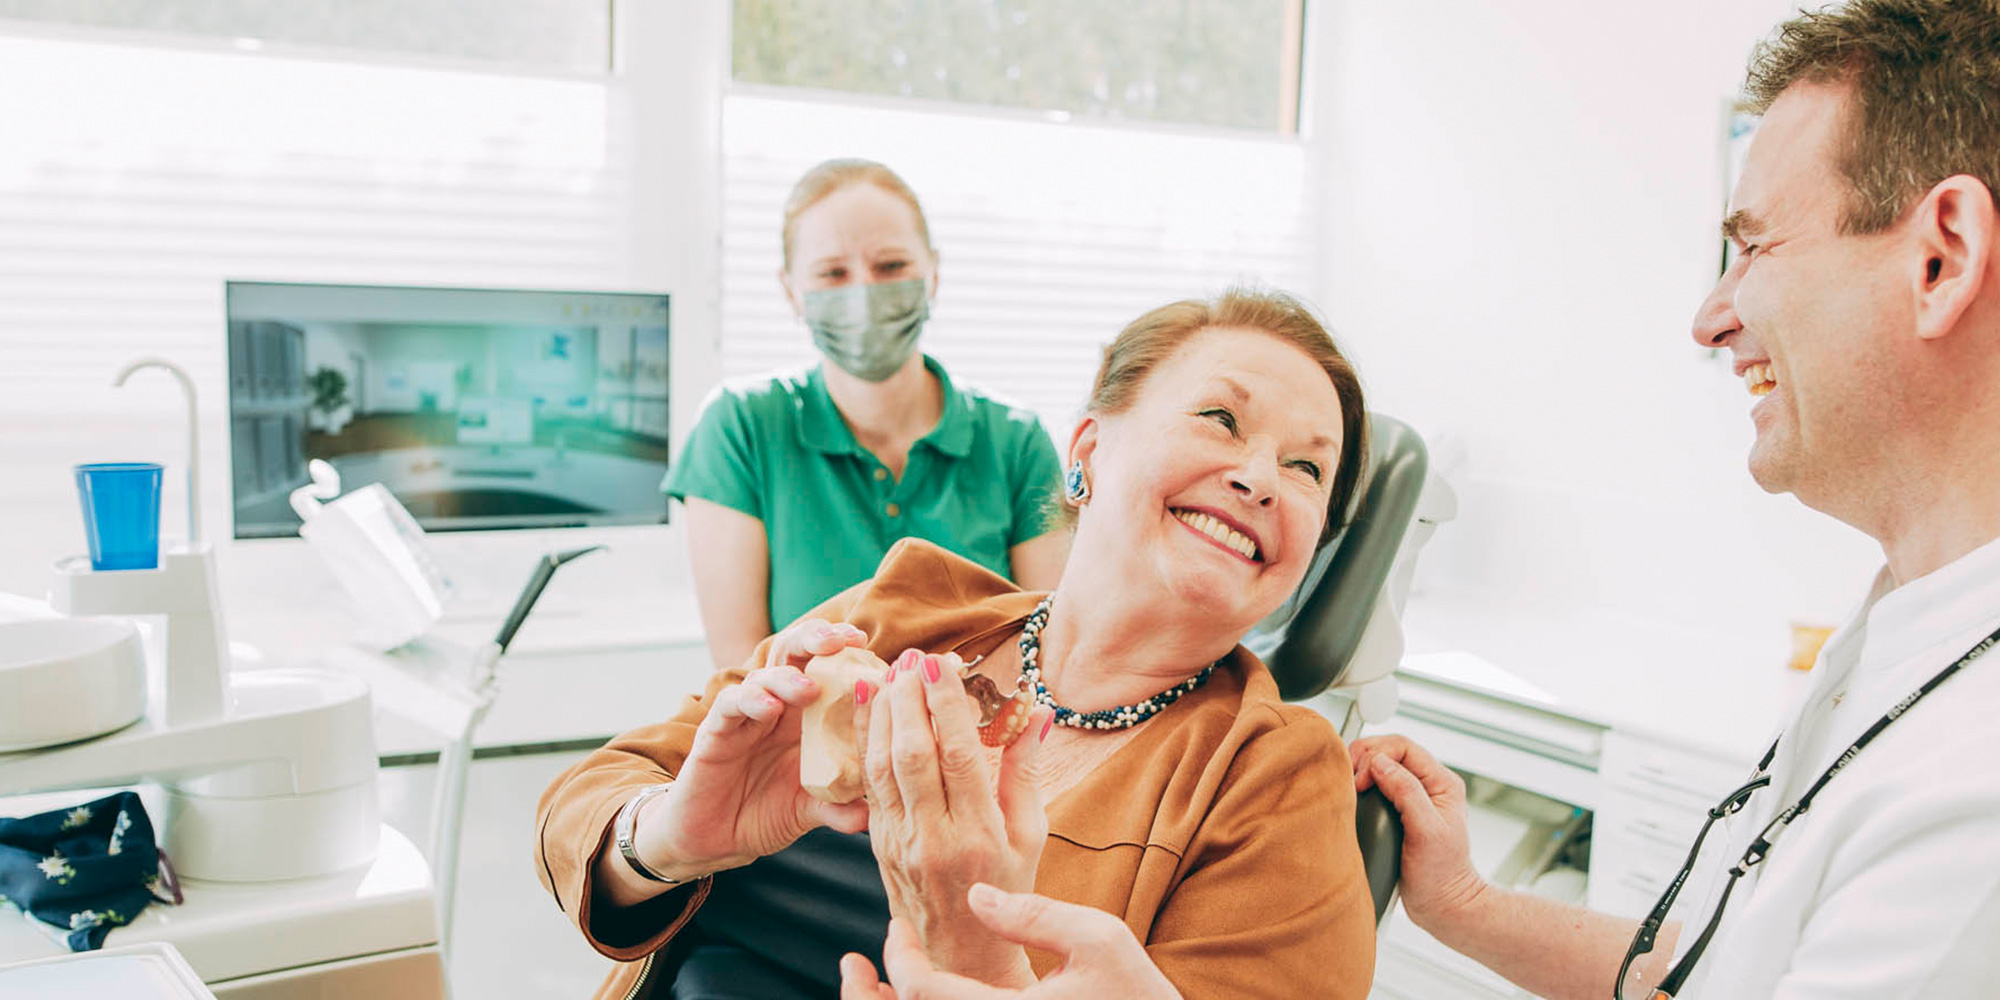 Patientin freut sich über sicheren Biss mit Zahnimplantaten aus Laupheim.